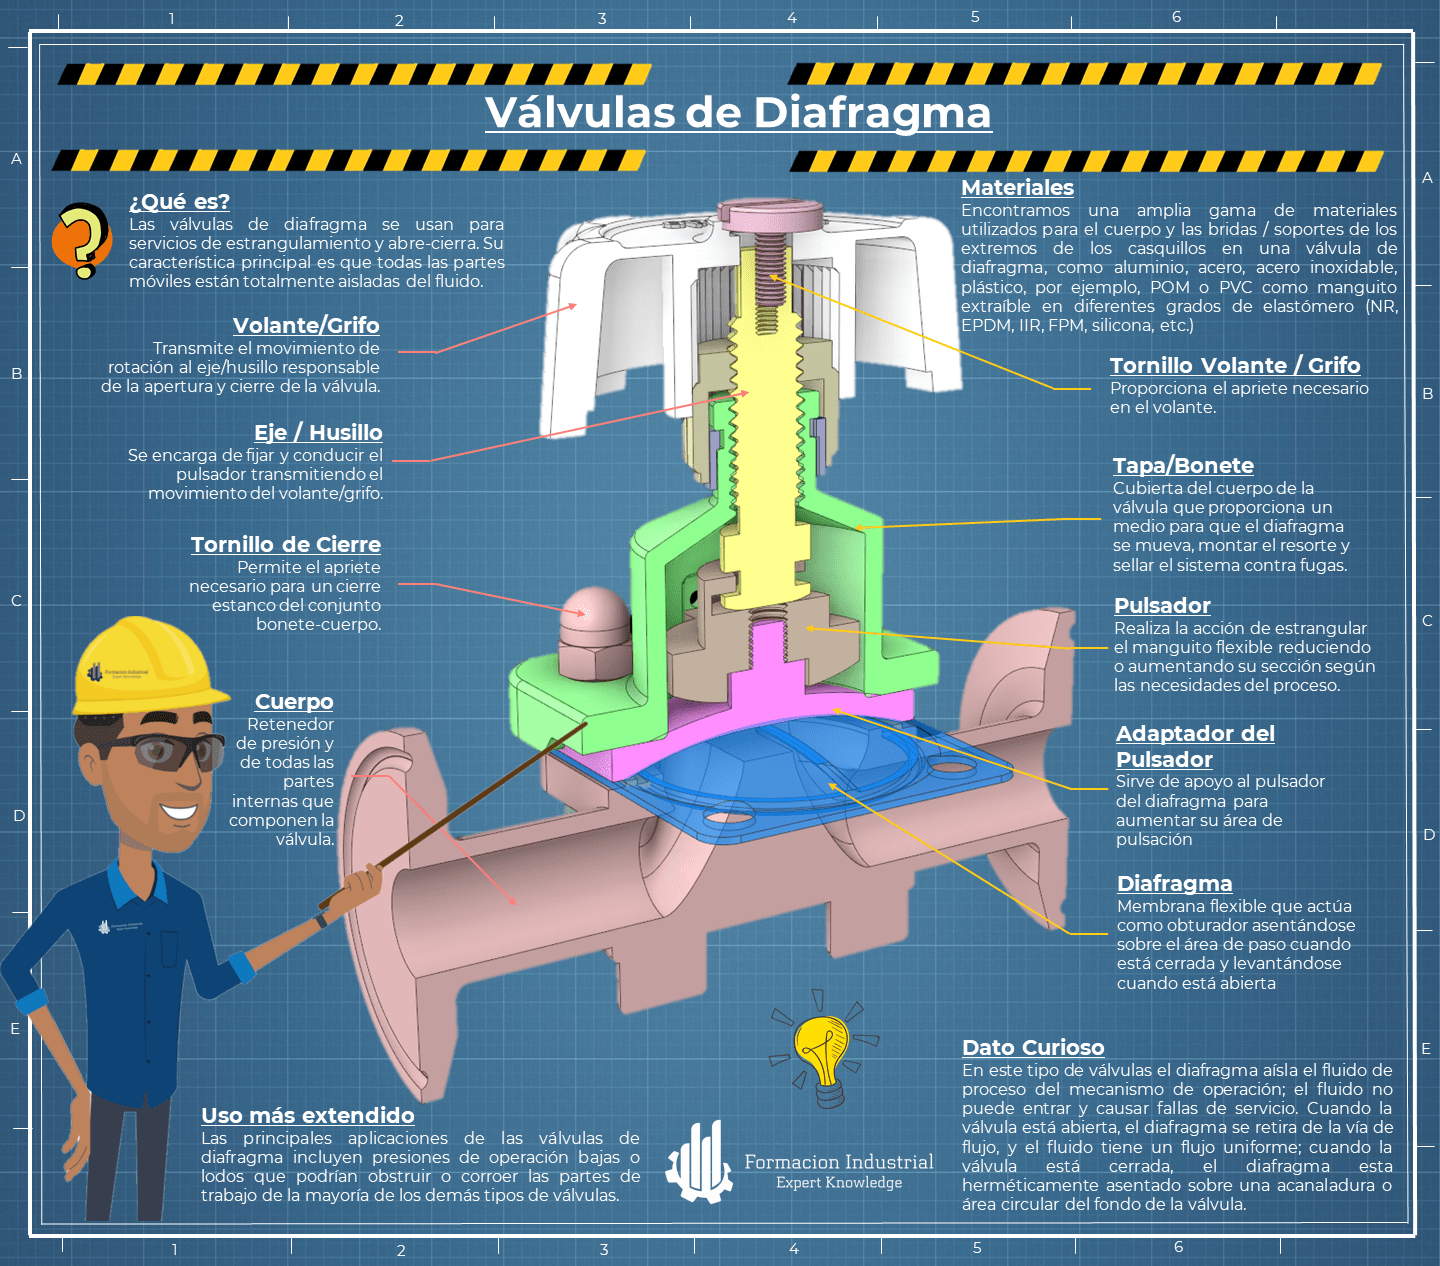 Infografía explicativa sobre las válvulas de diafragma y su aplicación en la industria